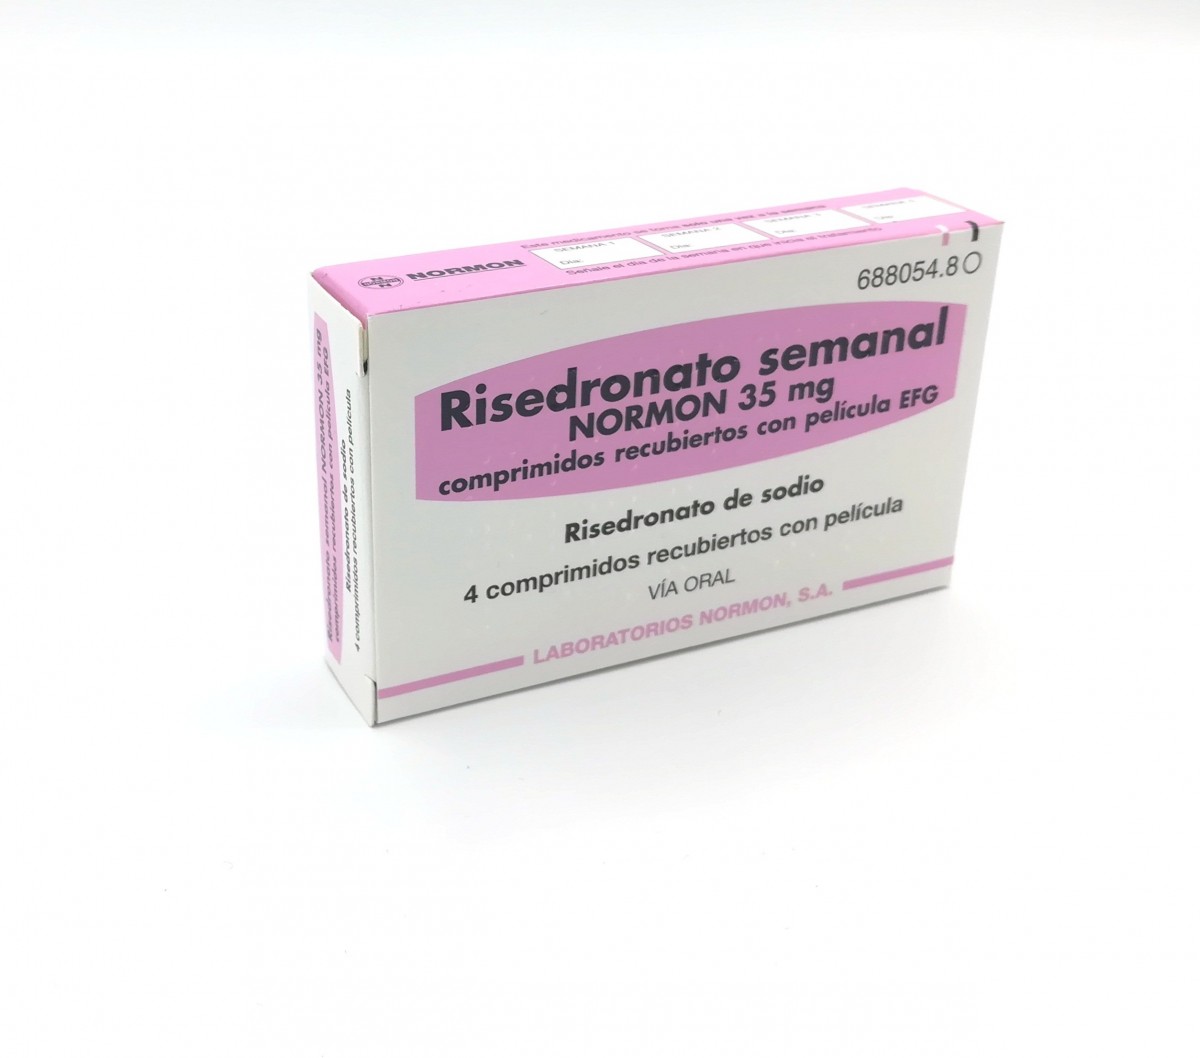 RISEDRONATO SEMANAL NORMON 35  mg COMPRIMIDOS RECUBIERTOS CON PELICULA EFG, 4 comprimidos fotografía del envase.